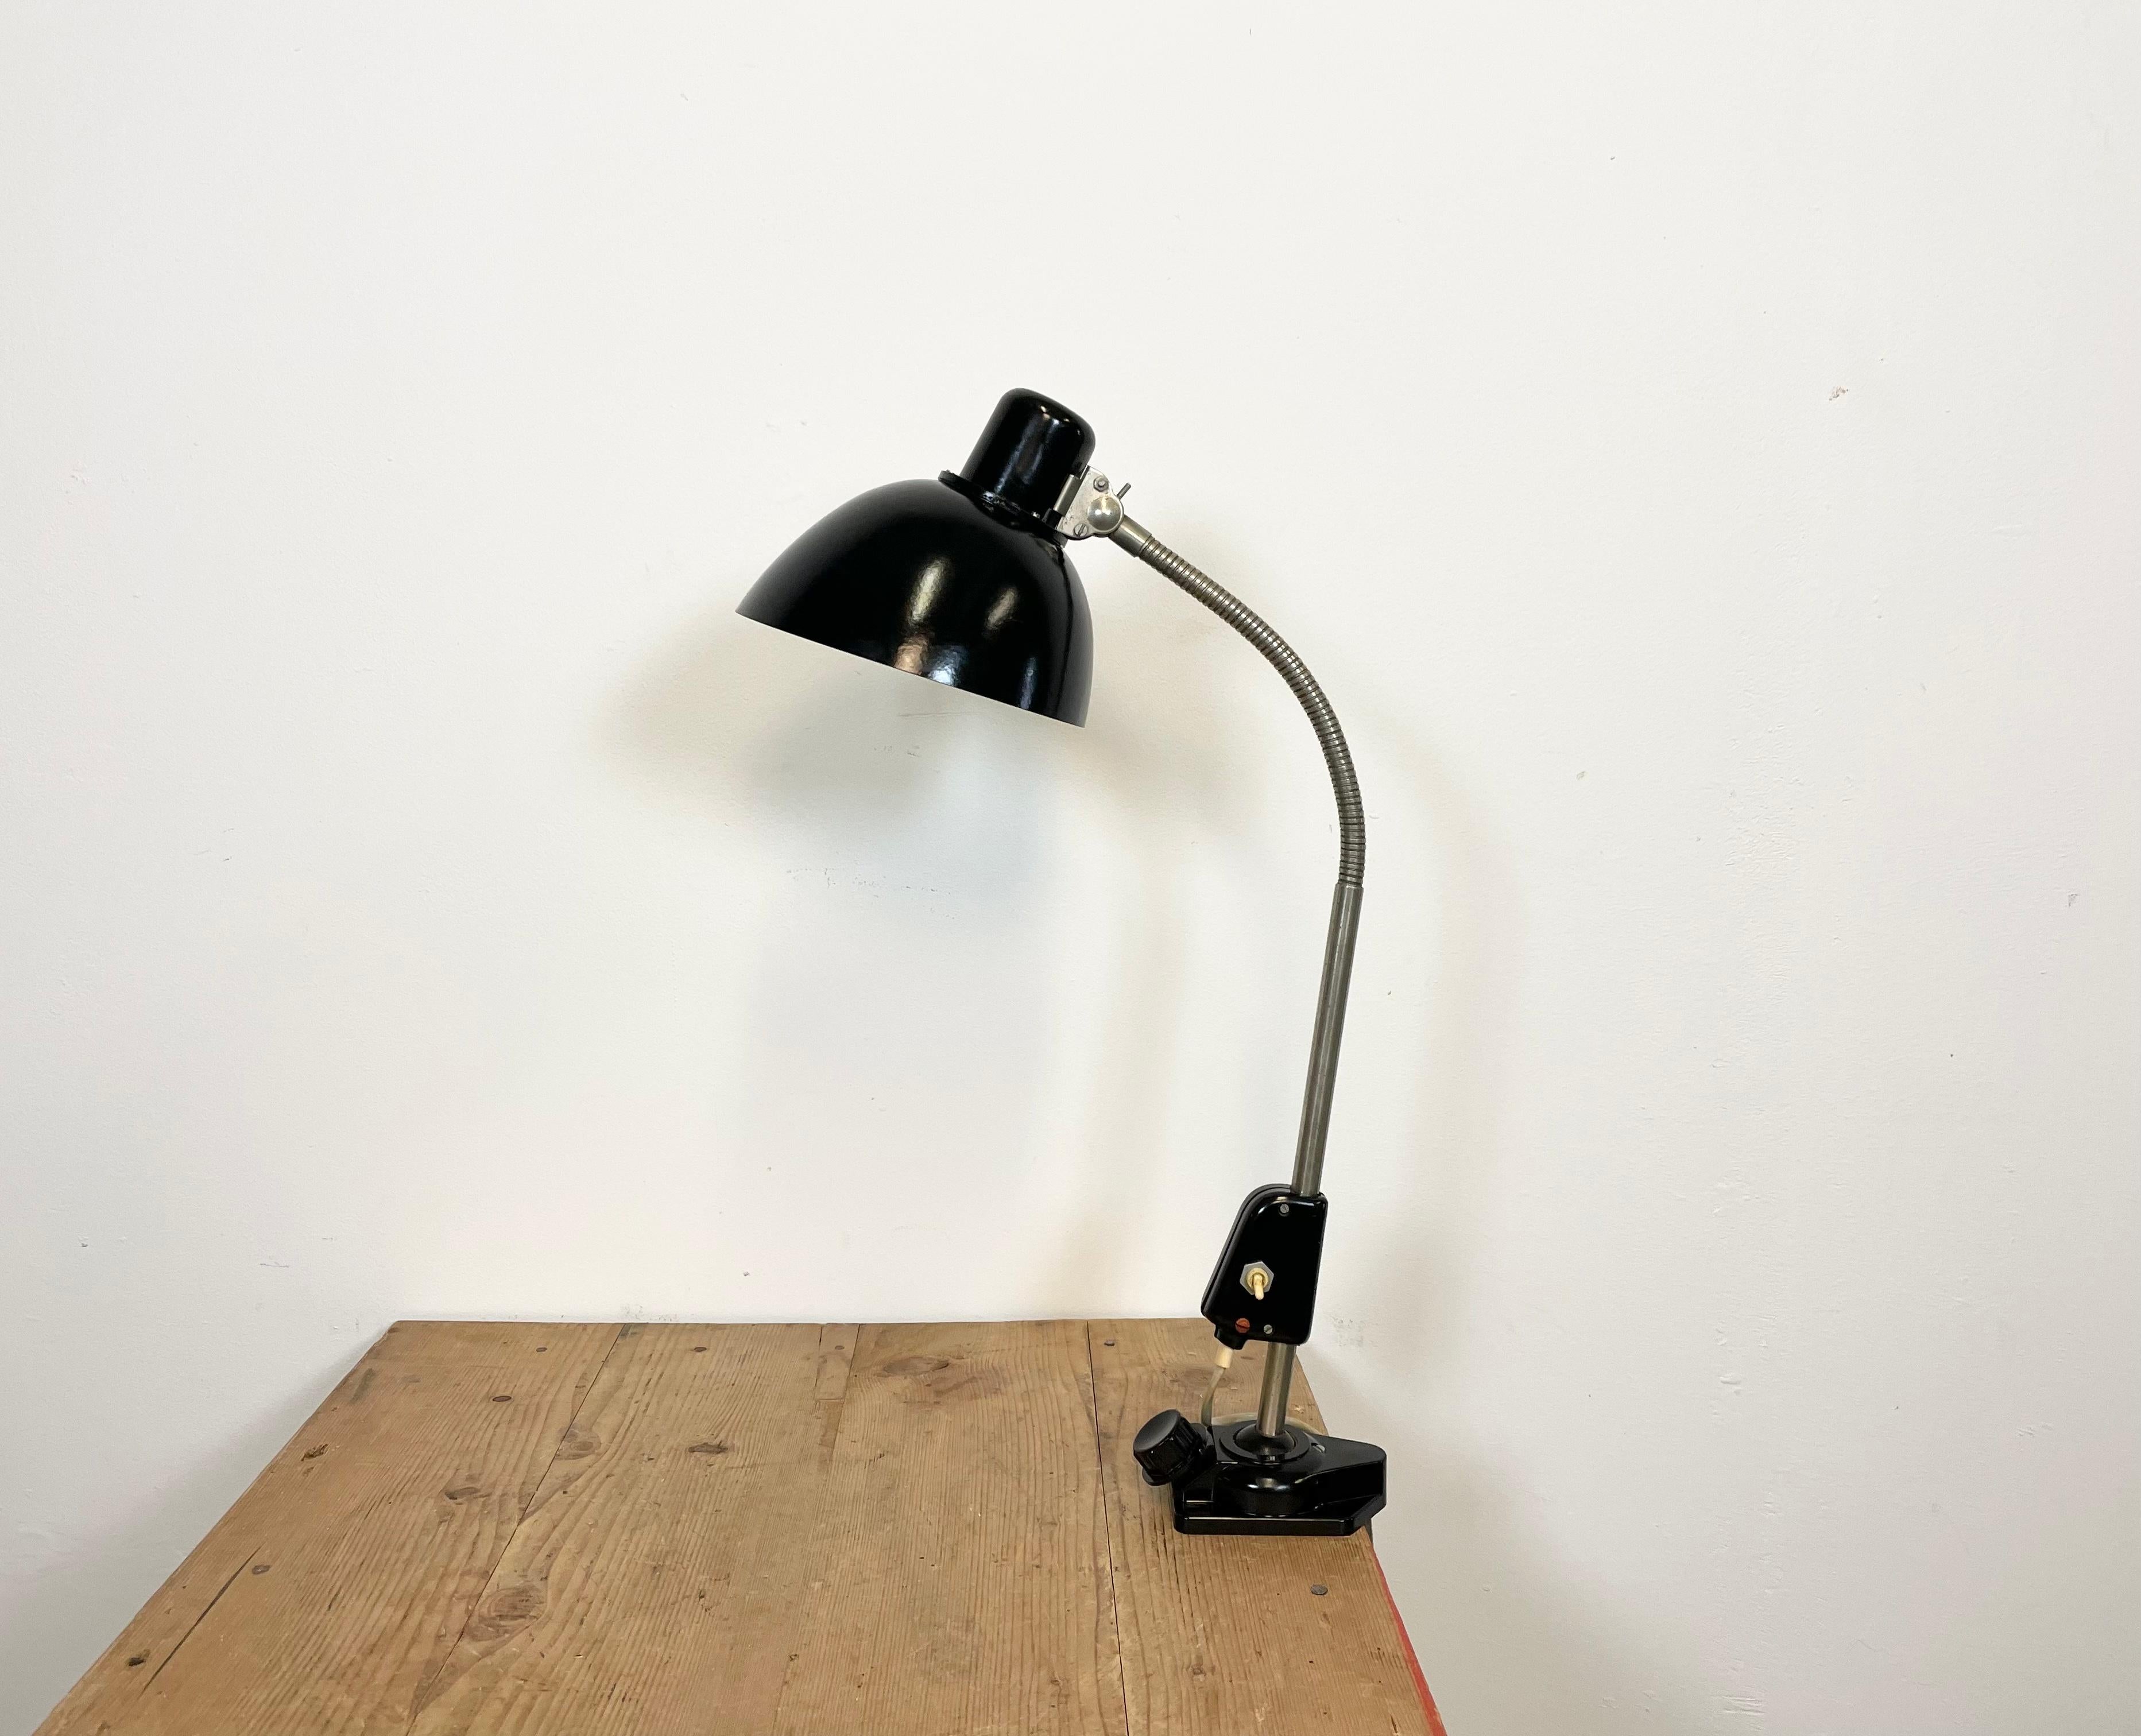 Industrielle Schwanenhals-Tischlampe aus Bakelit, hergestellt in Deutschland in den 1950er Jahren, in sehr gutem Zustand. Die Fassung erfordert E 27-Glühbirnen. Der Durchmesser des Lampenschirms beträgt 19 cm.